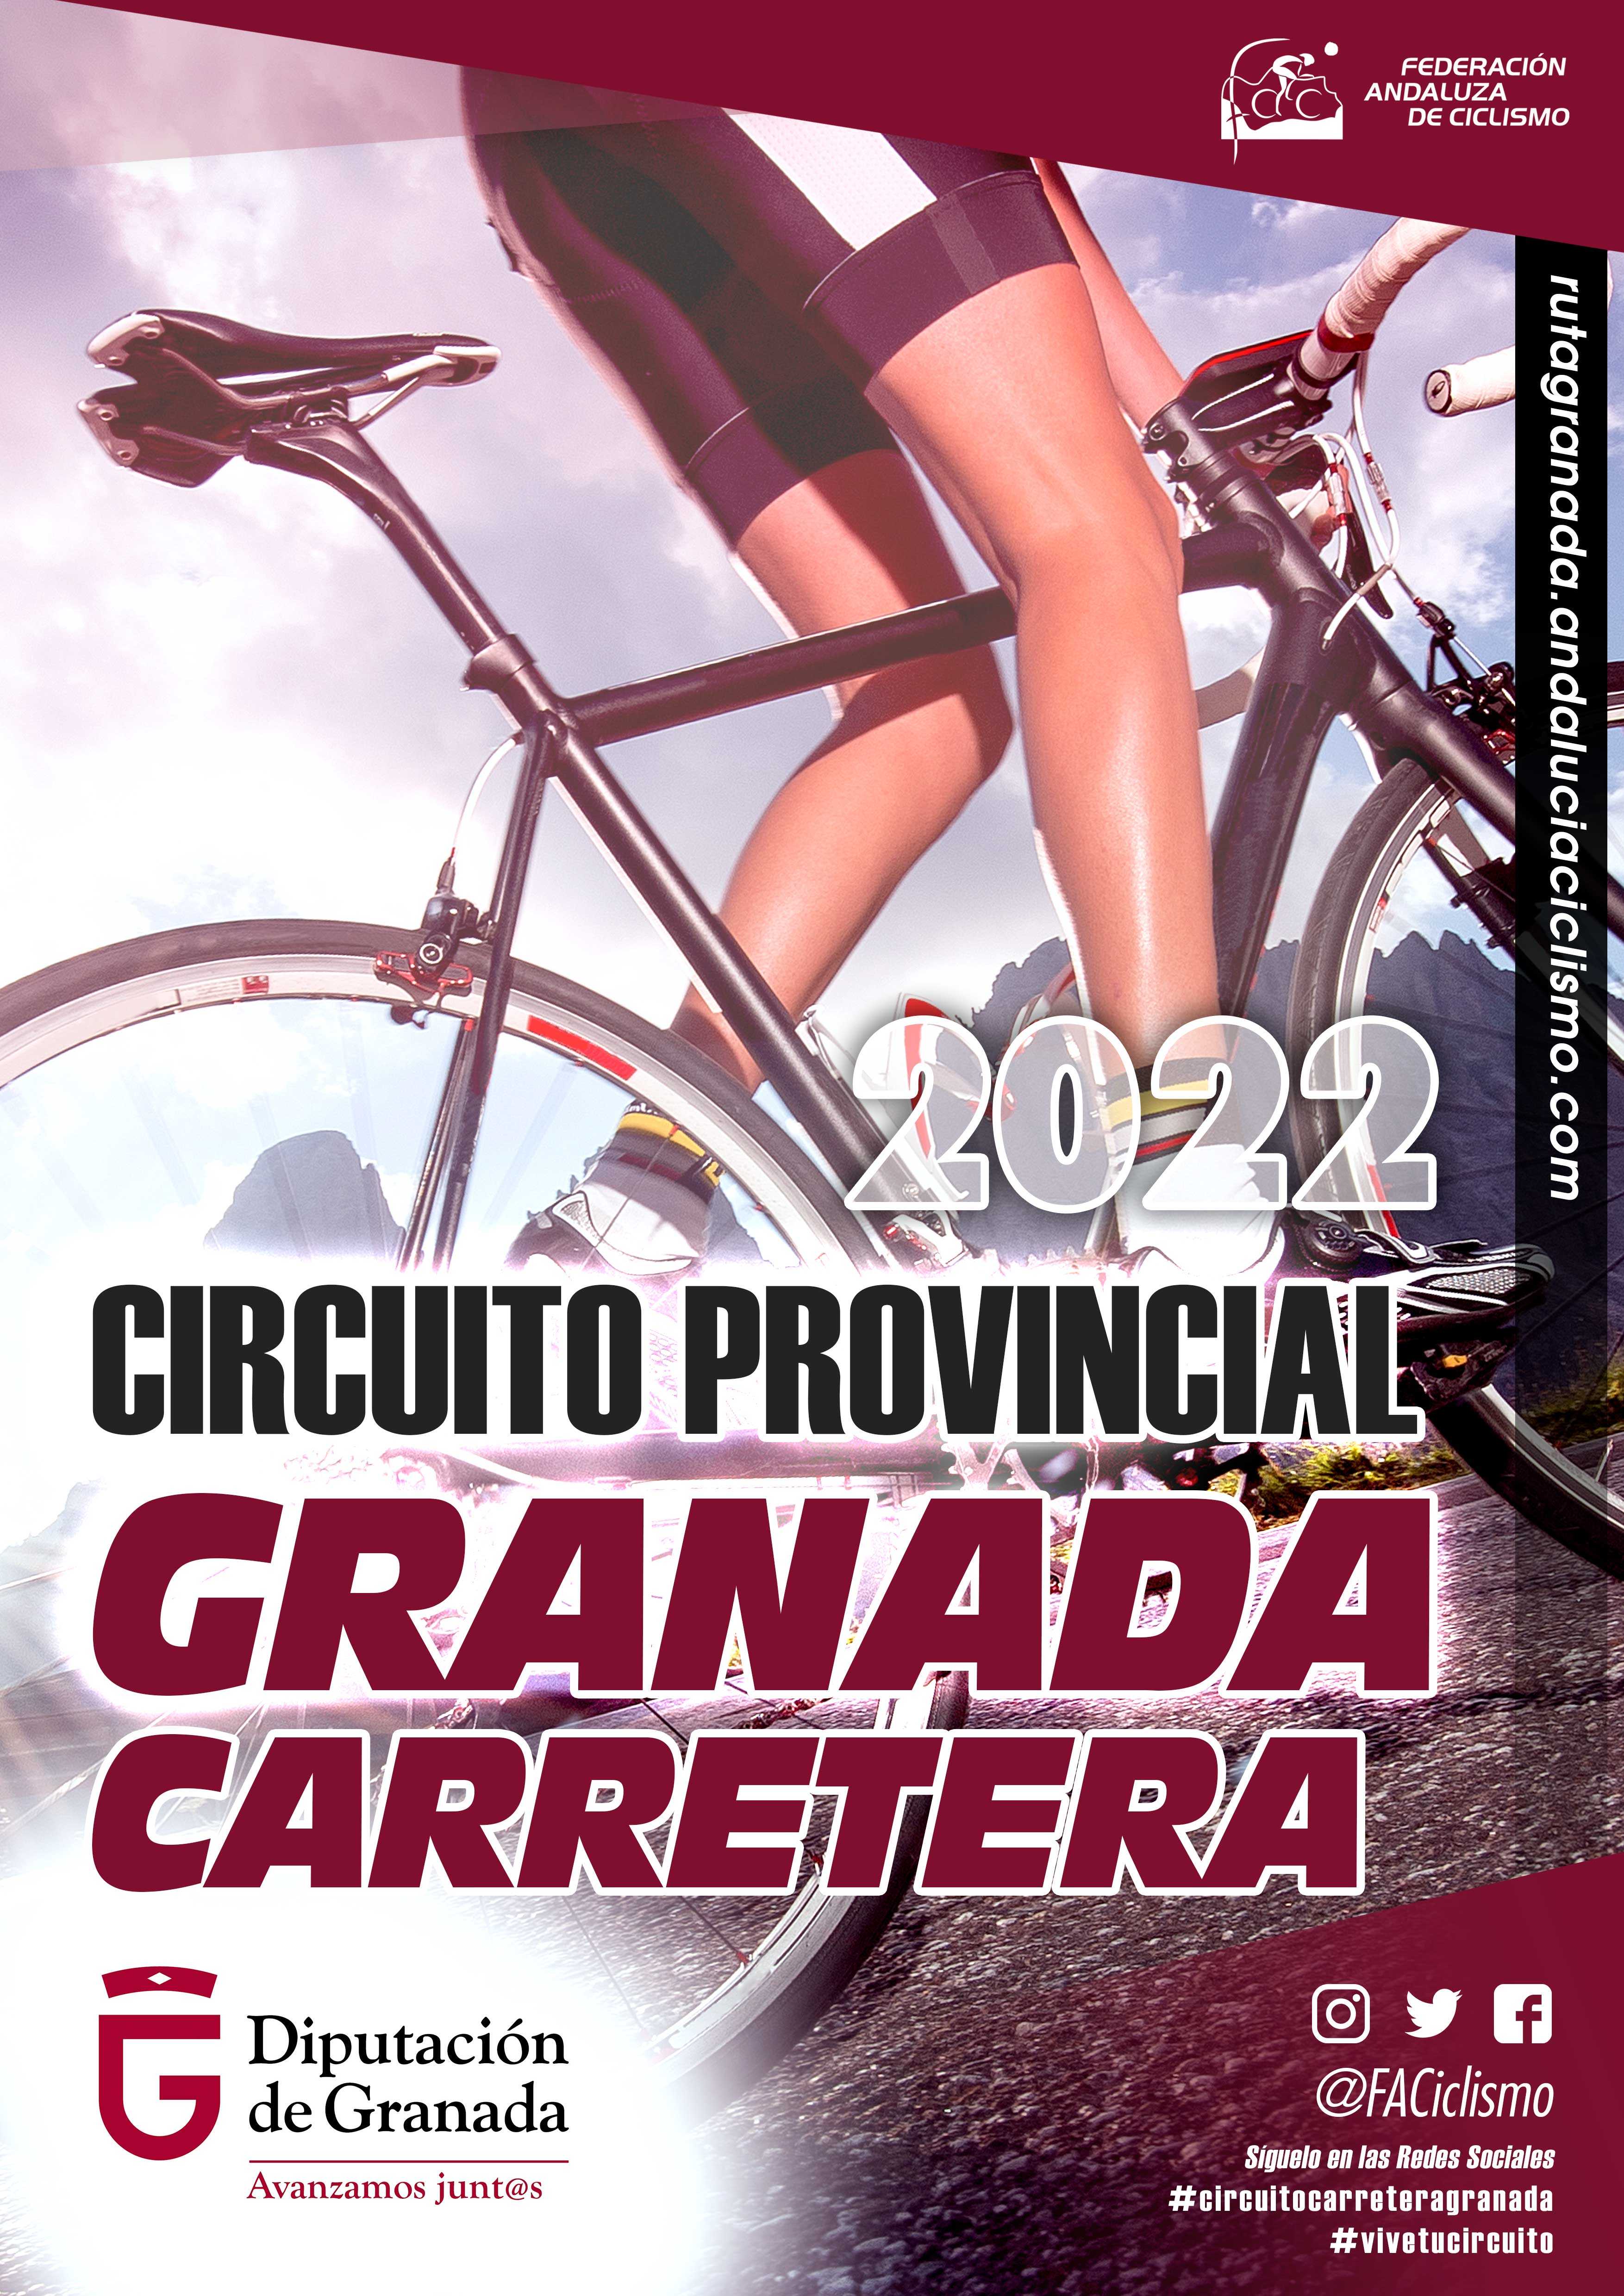 La ‘Cota 1200’ no faltará a su cita con el Circuito Provincial de Granada